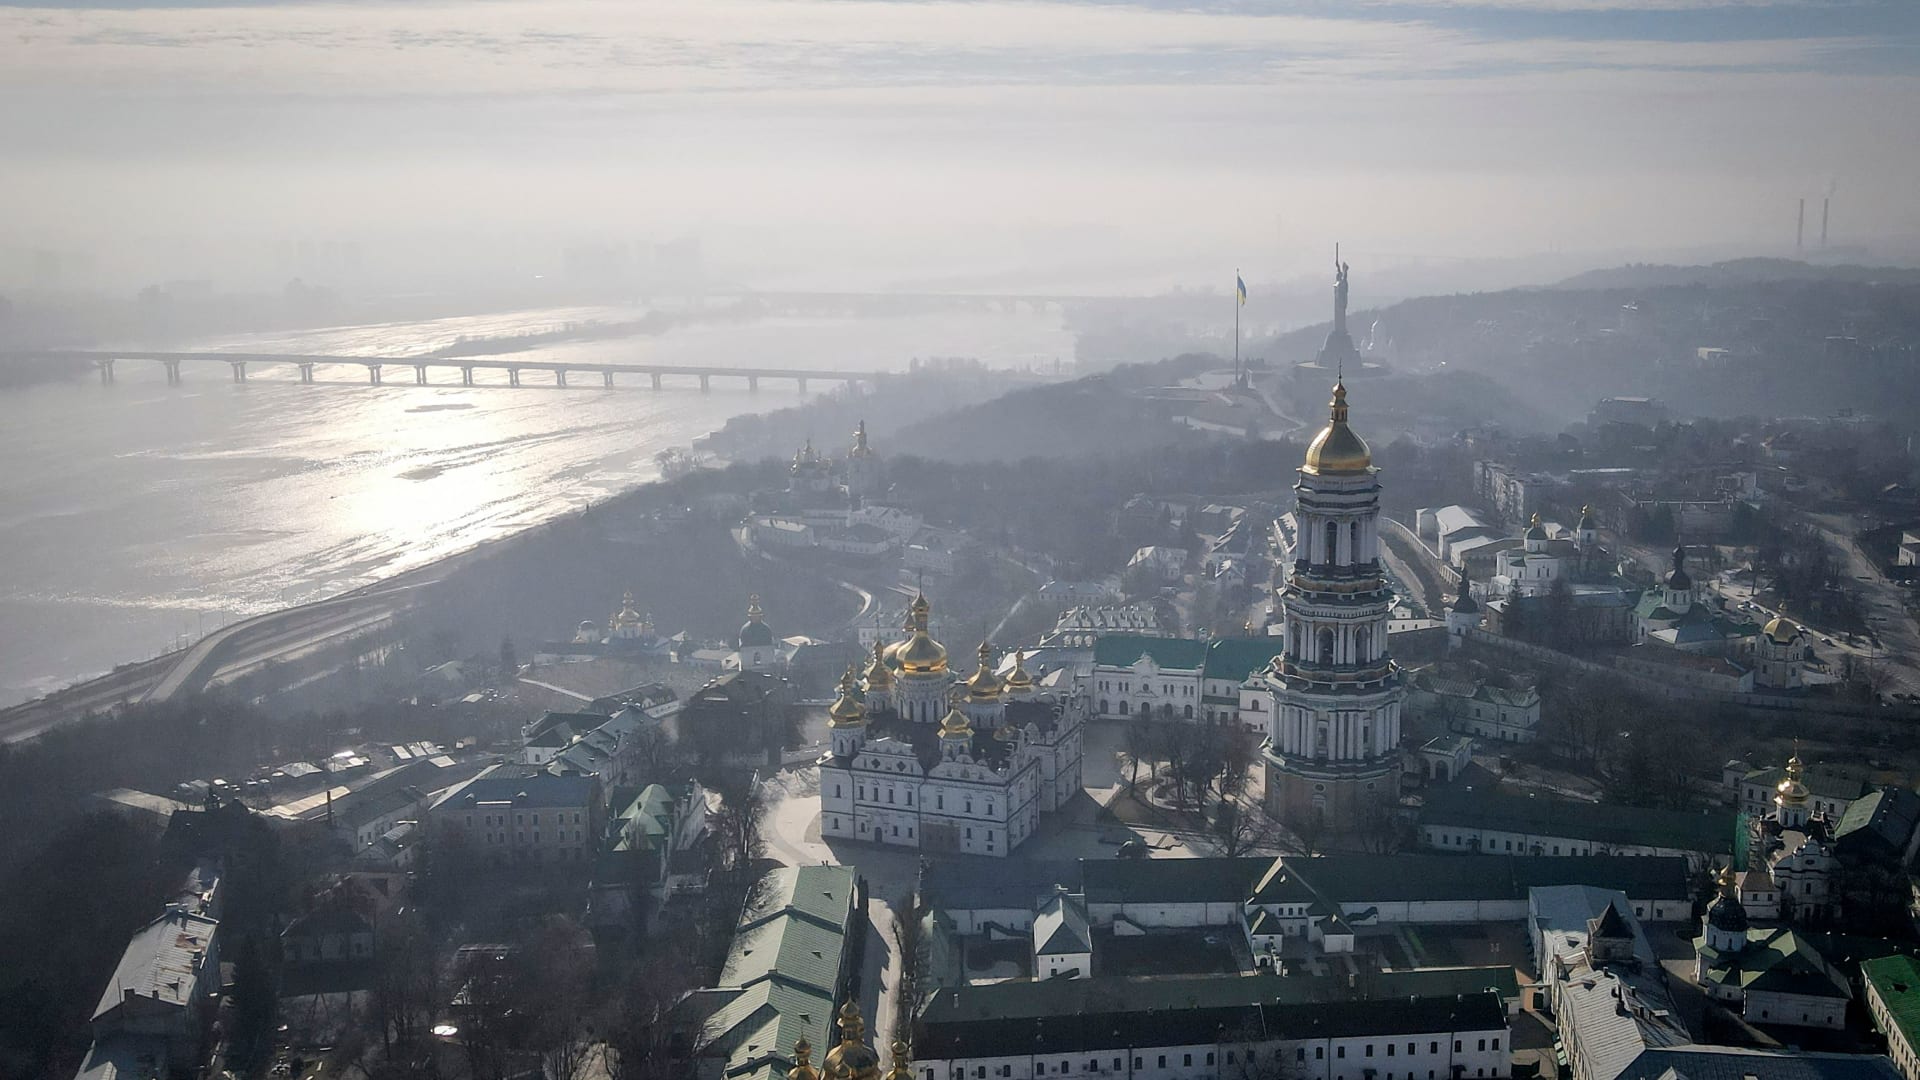 صورة ارشيفية عامة من سماء العاصمة كييف